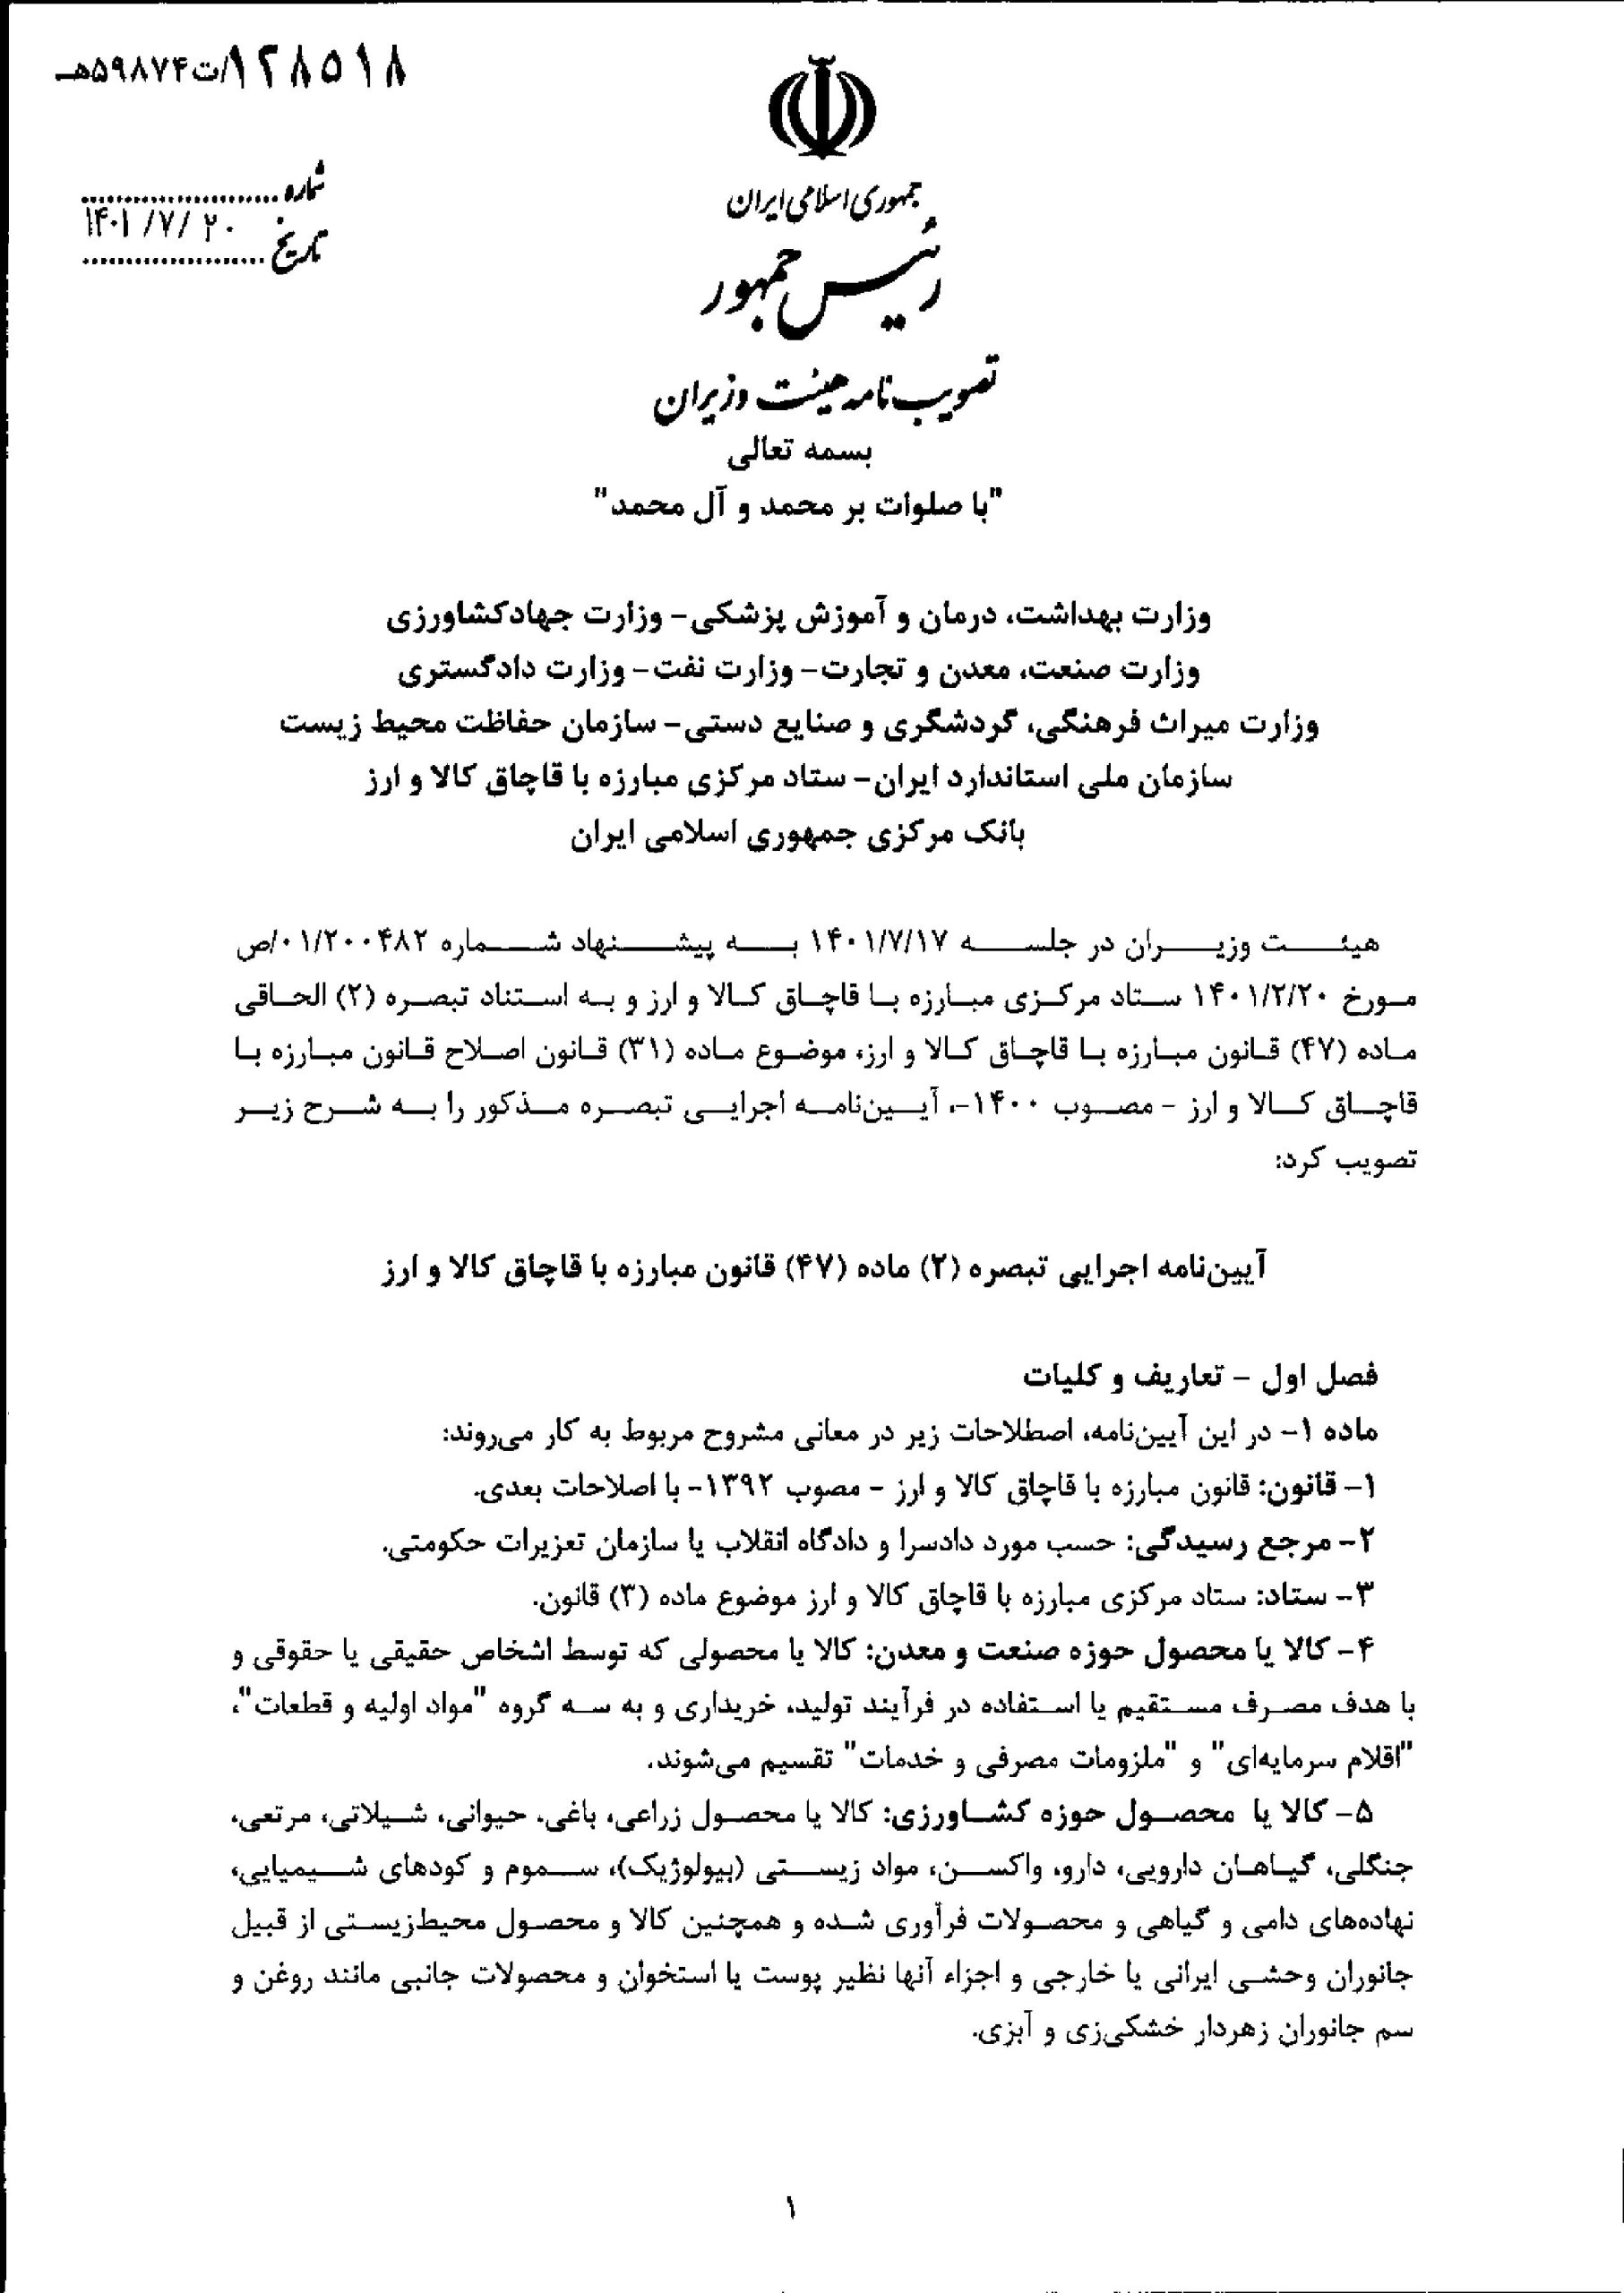 ابلاغ مصوبه هیأت وزیران در خصوص مرجع تشخیص ایرانی بودن کالاهای مکشوفه به ظن قاچاق 1401/07/20